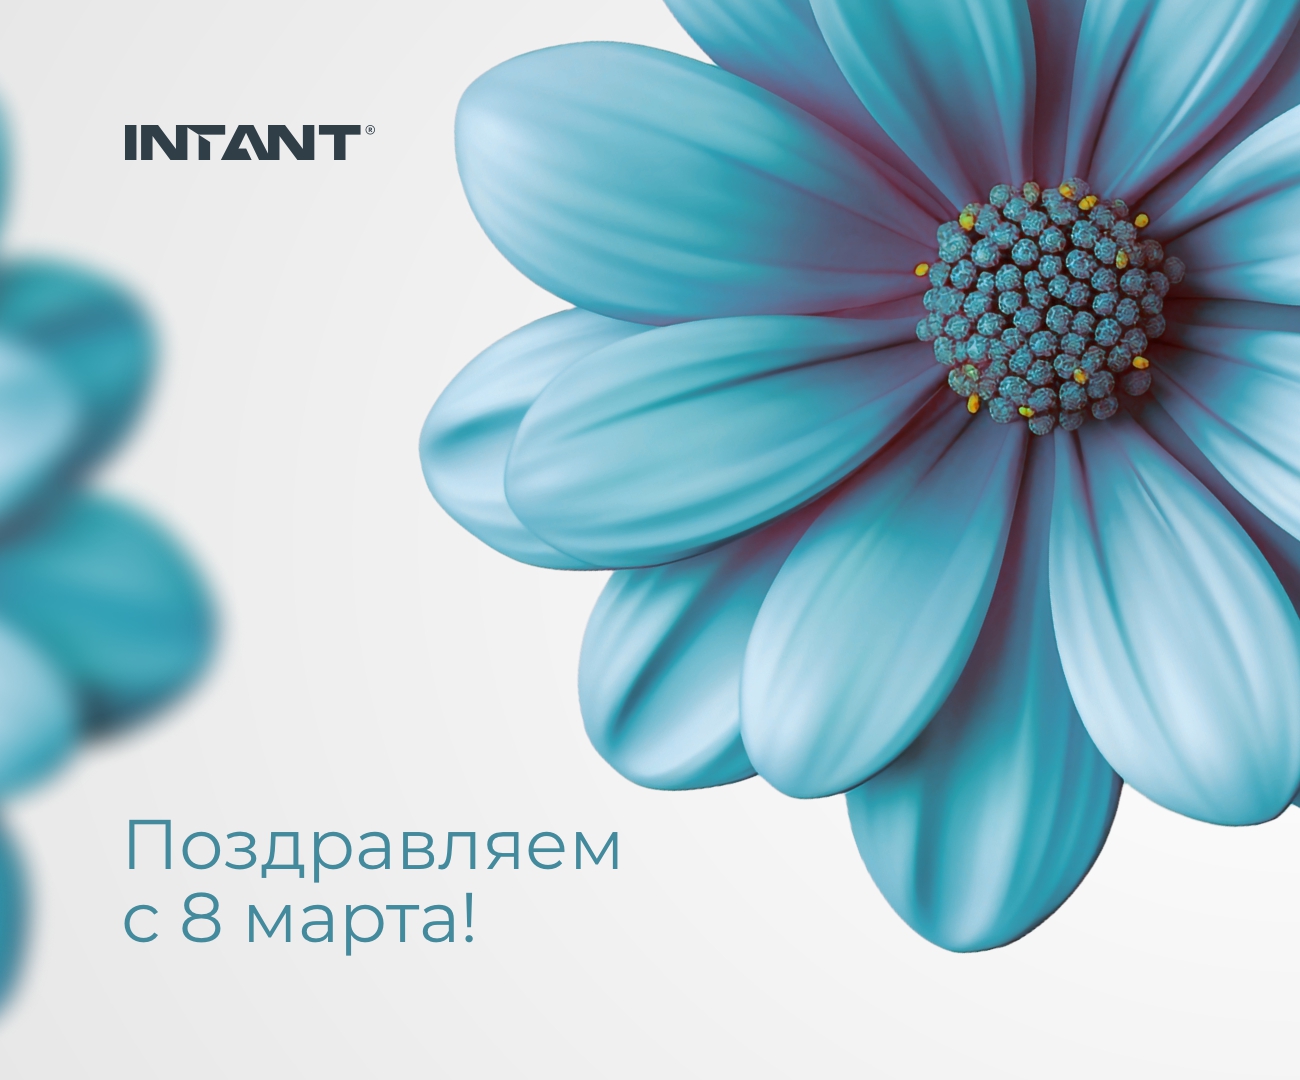 Компания INTANT поздравляет Вас с 8 марта! <